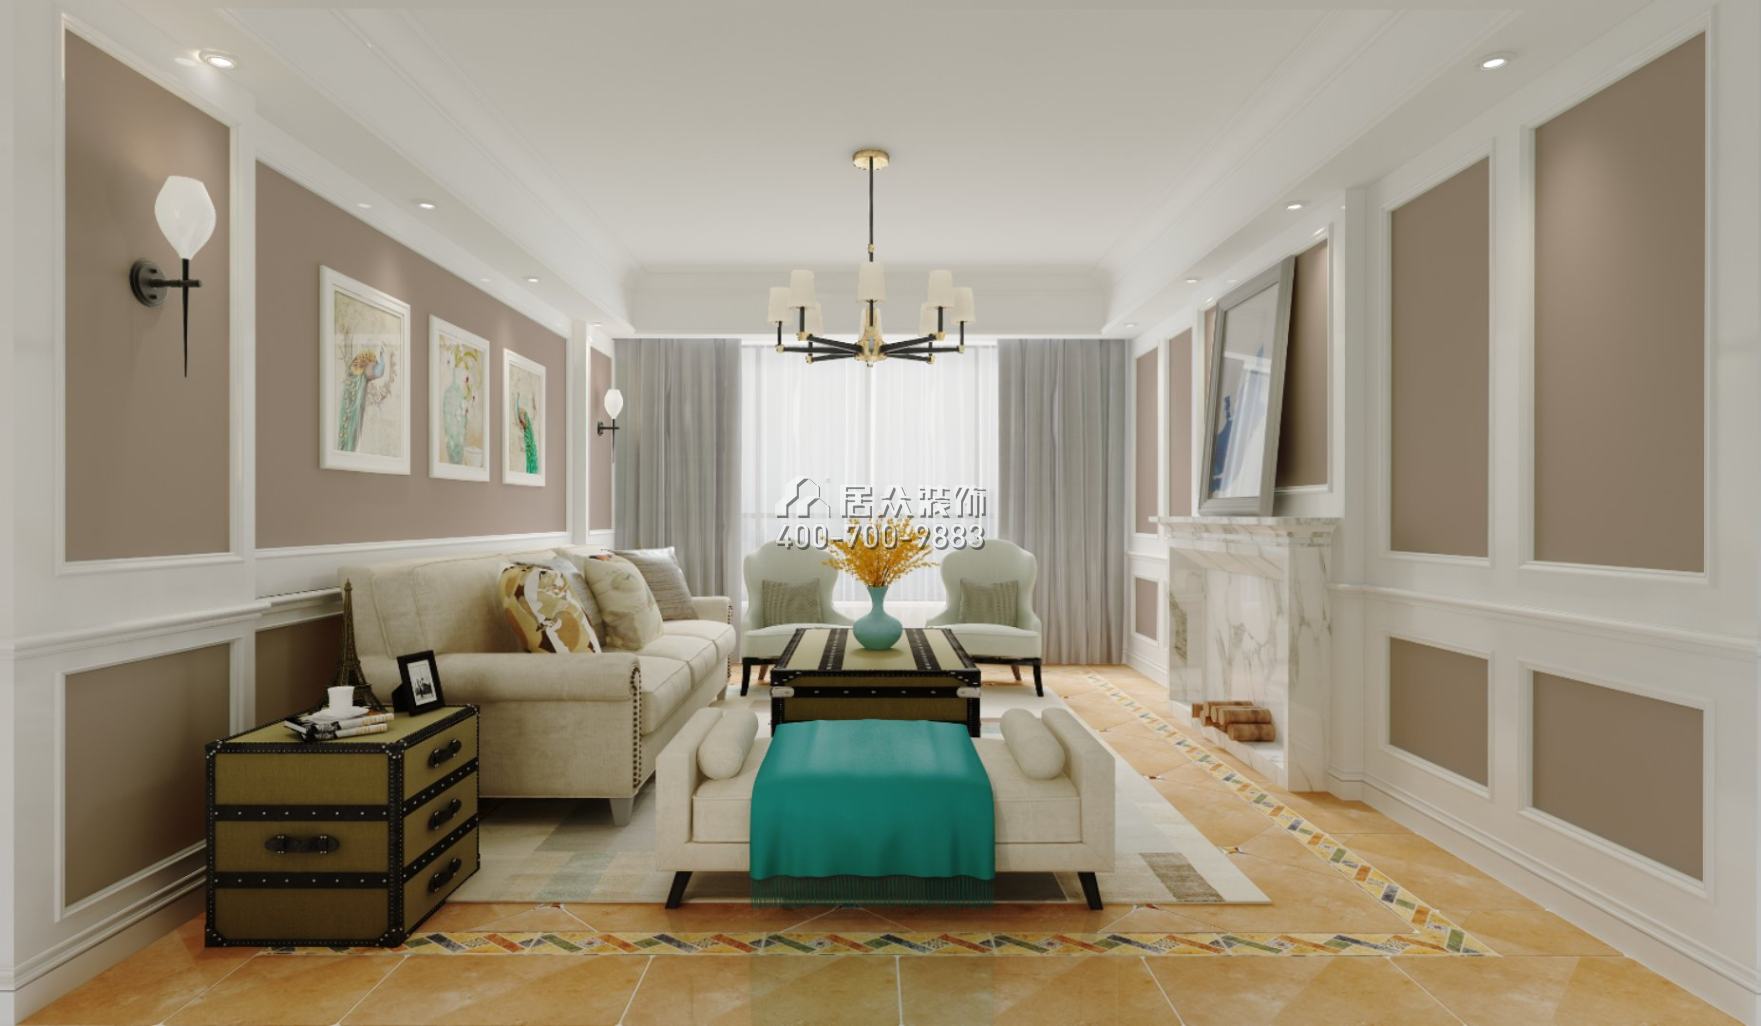 德景園127平方米美式風格平層戶型客廳裝修效果圖